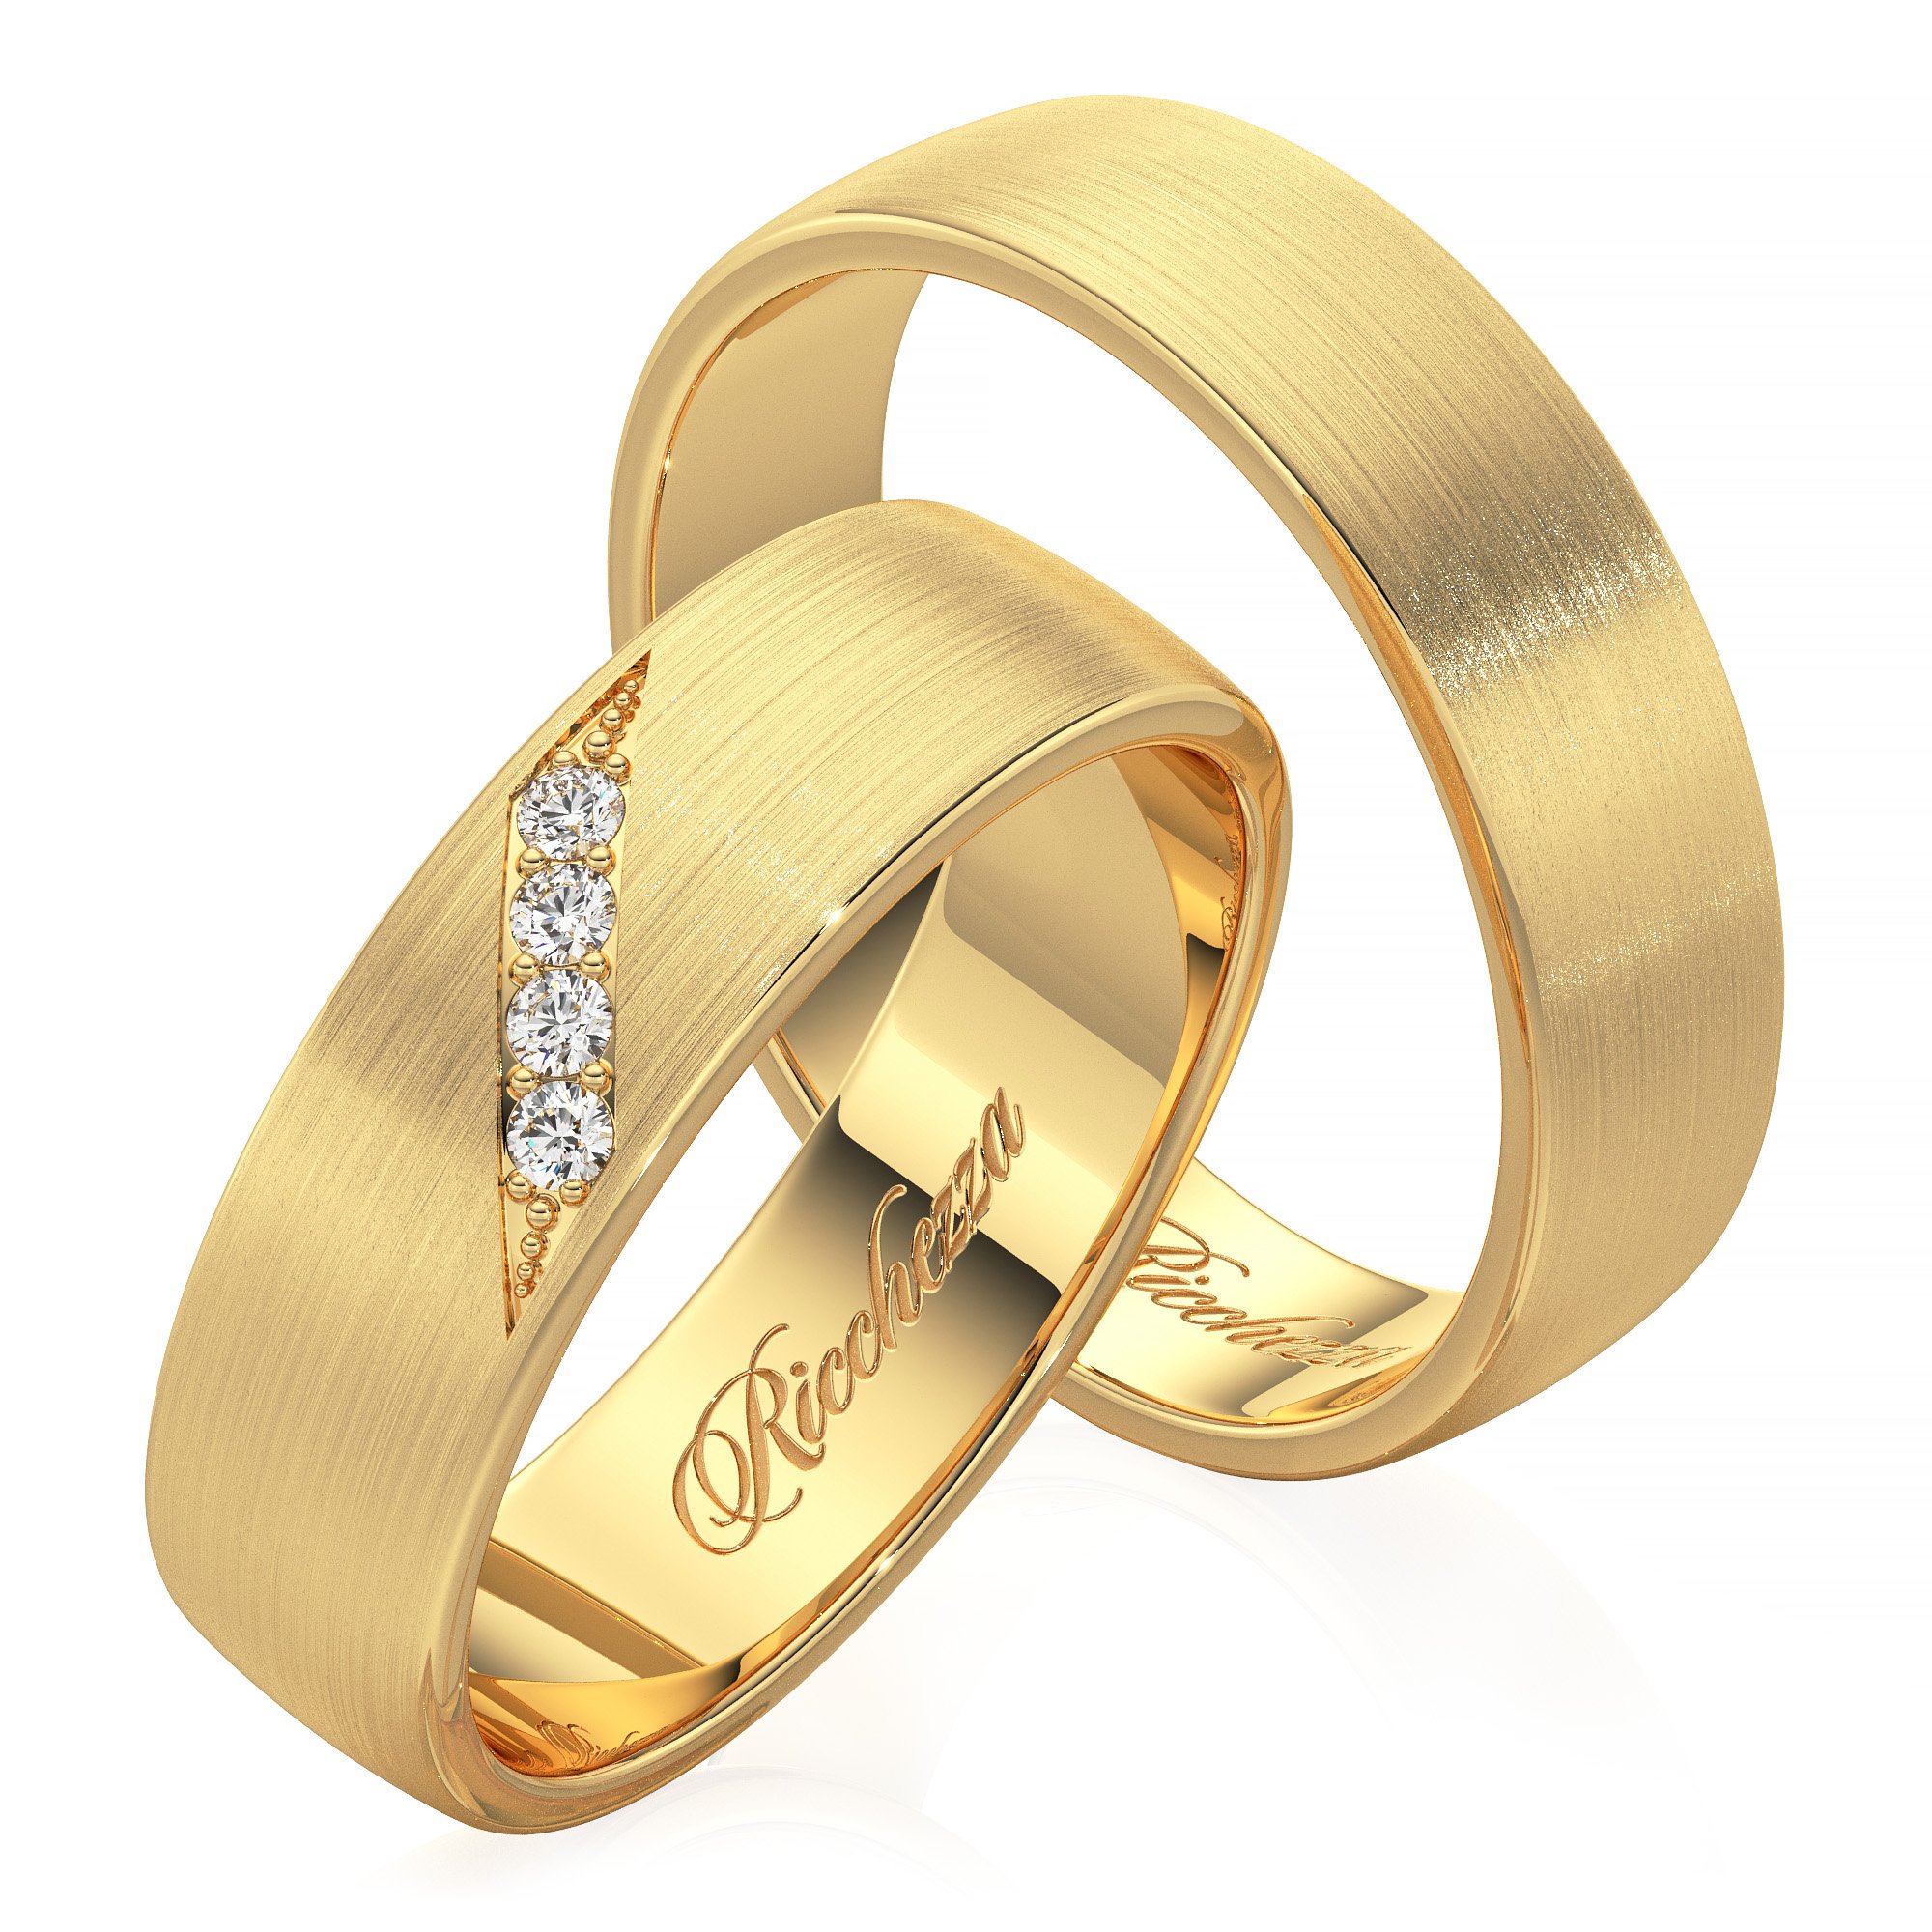 Цена золота в пензе. Кольца обручальные парные золотые Адамас. Обручальные кольца 585. Обручальные кольца парные 585. Золотые кольца обручалки 585 пробы.